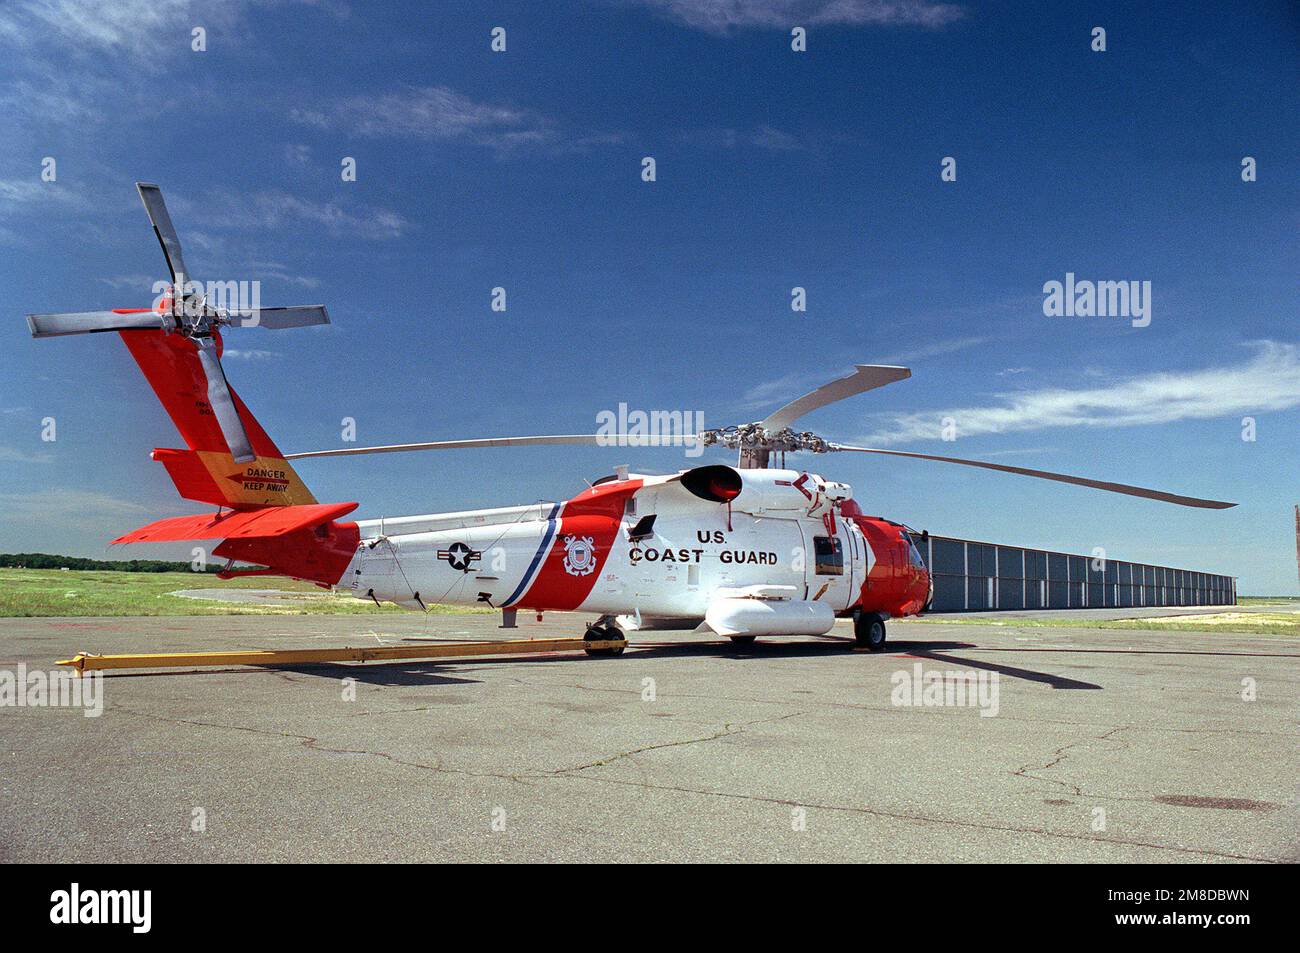 Un hélicoptère HH-60J Jayhawk des États-Unis Coast Guard, équipé d'une antenne haute fréquence et d'une lampe de recherche, se tient sur la ligne de vol. Pays : inconnu Banque D'Images